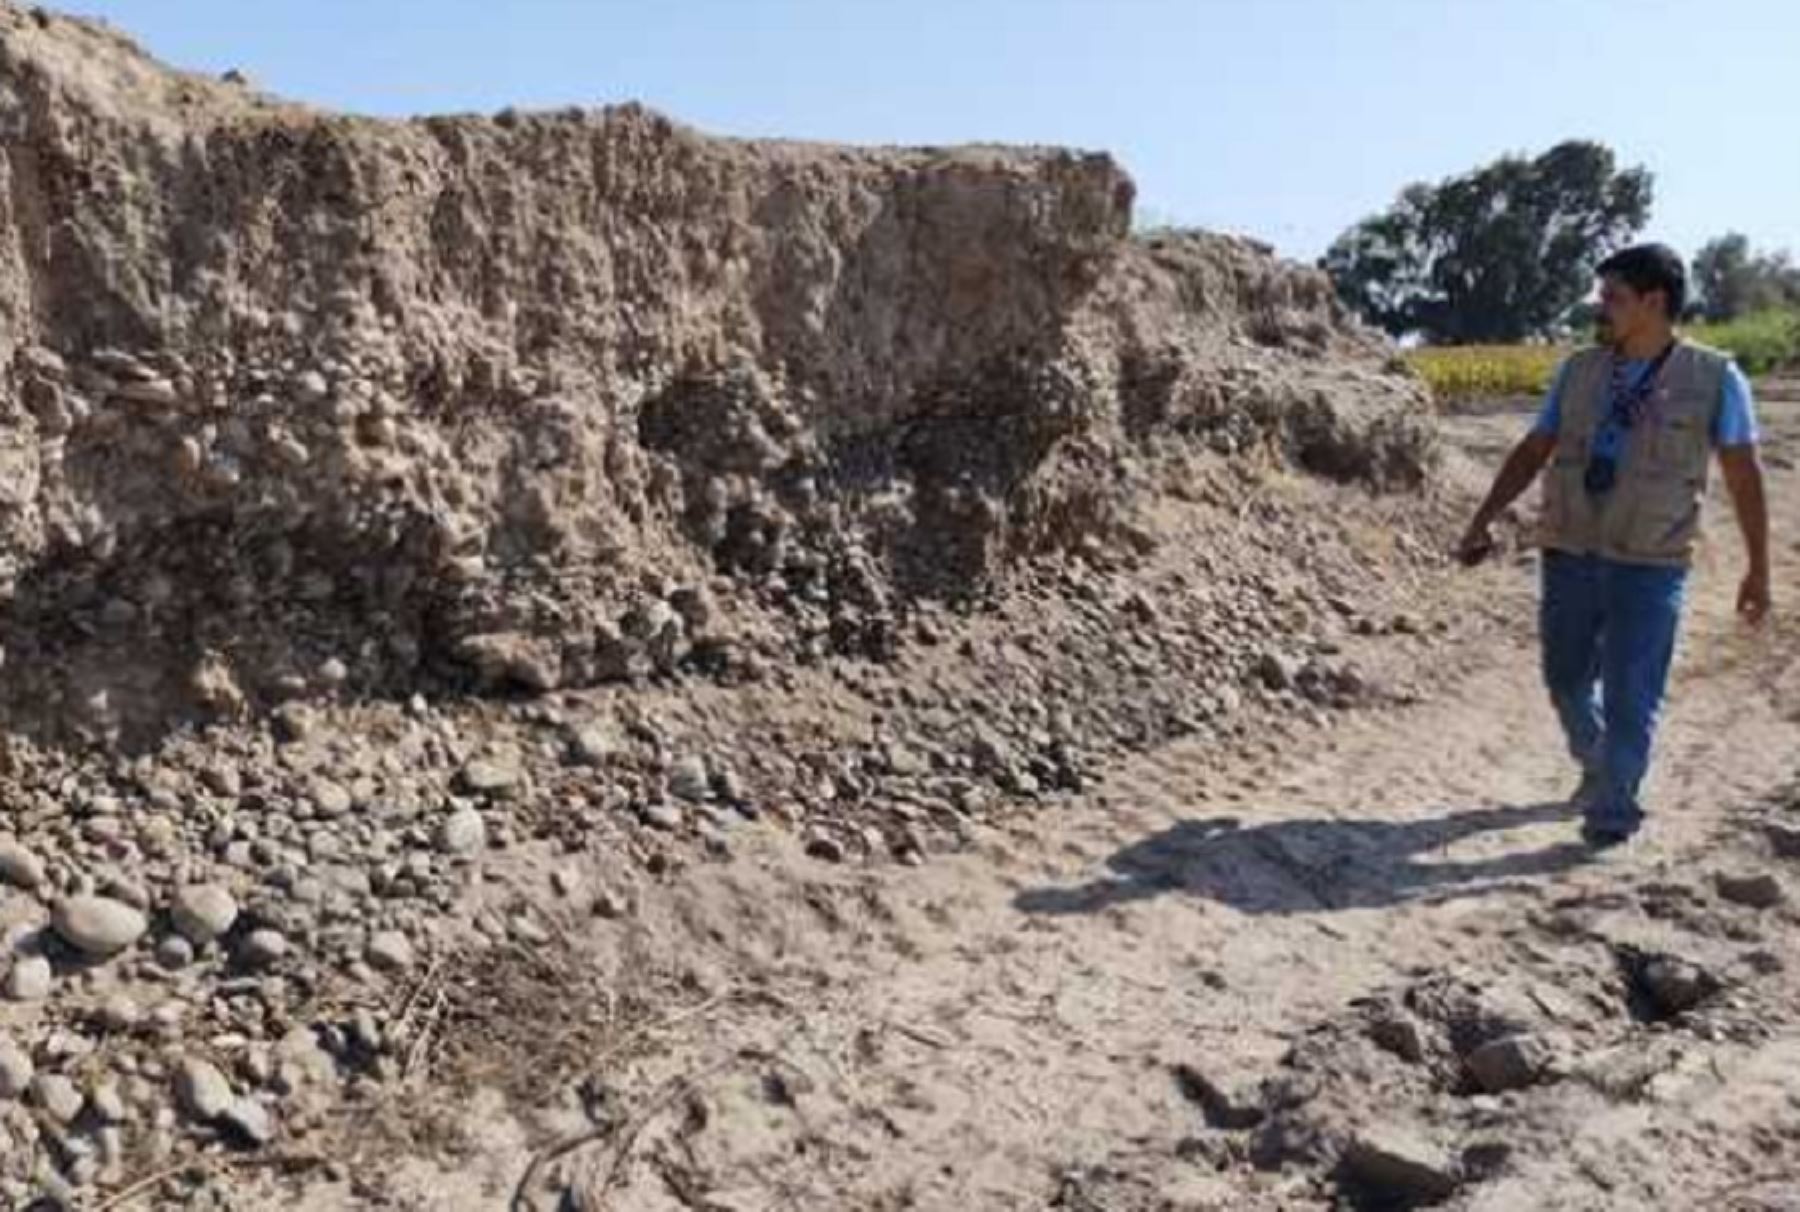 El sitio arqueológico La Venturosa, se encuentra expuesto a posibles afectaciones por parte de agentes antrópicos, que no cuentan con los permisos correspondientes emitidos por el Ministerio de Cultura.